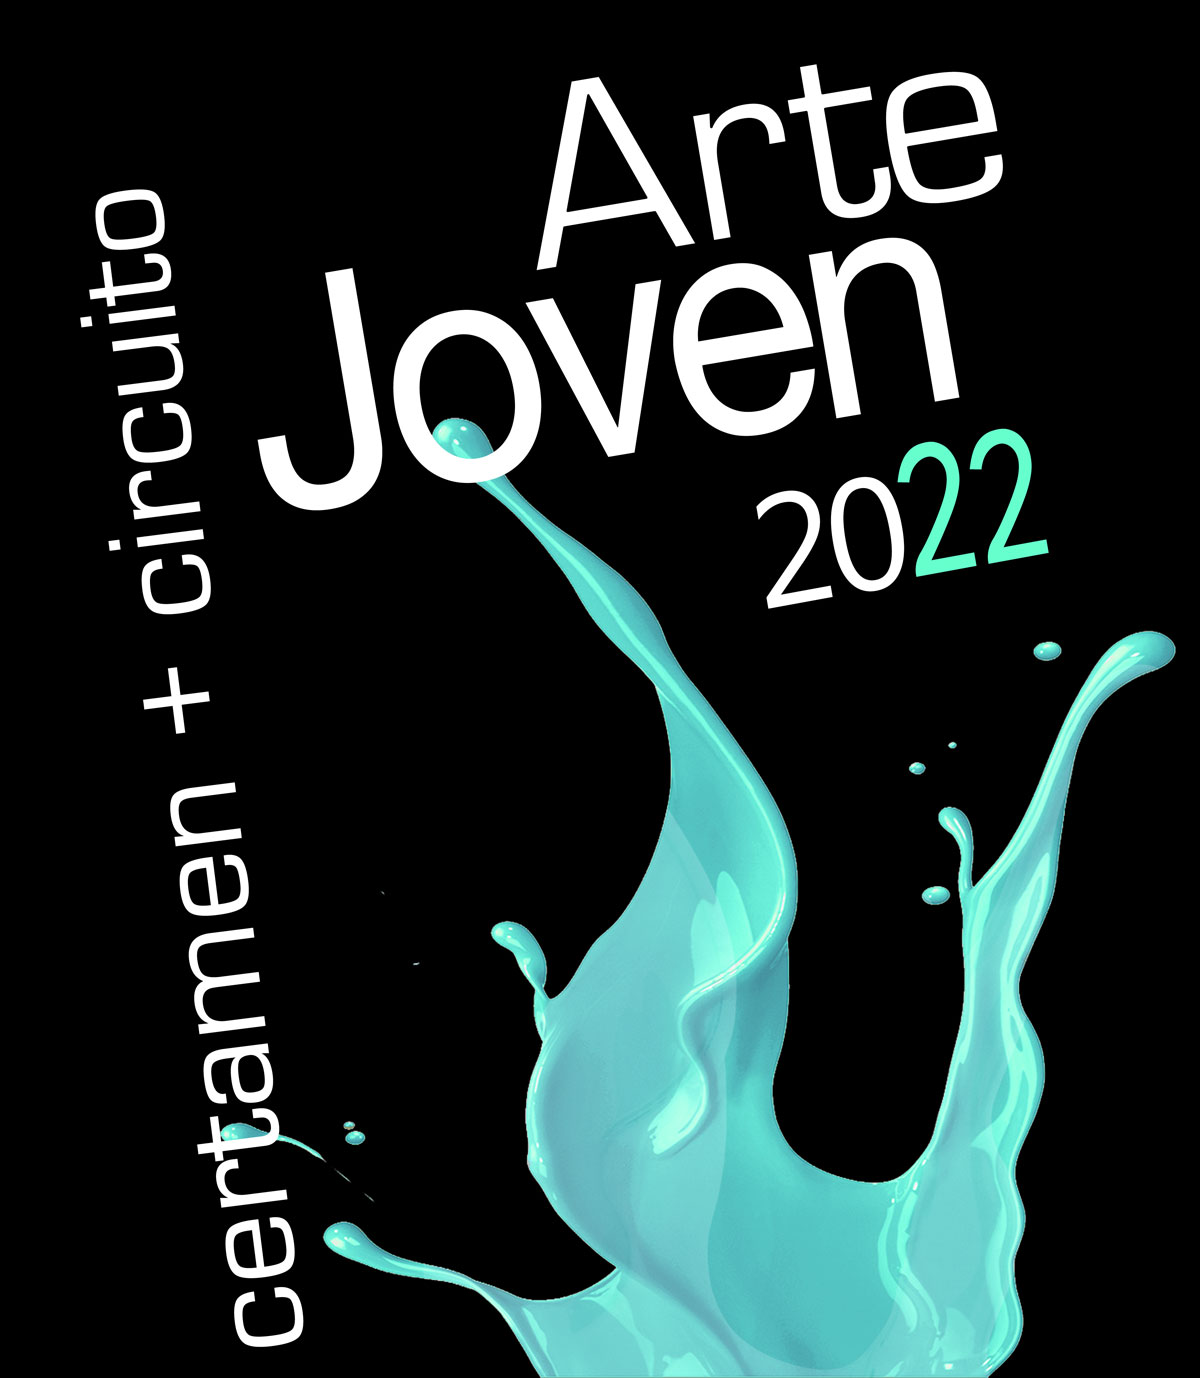 Circuito de Arte Joven 2022